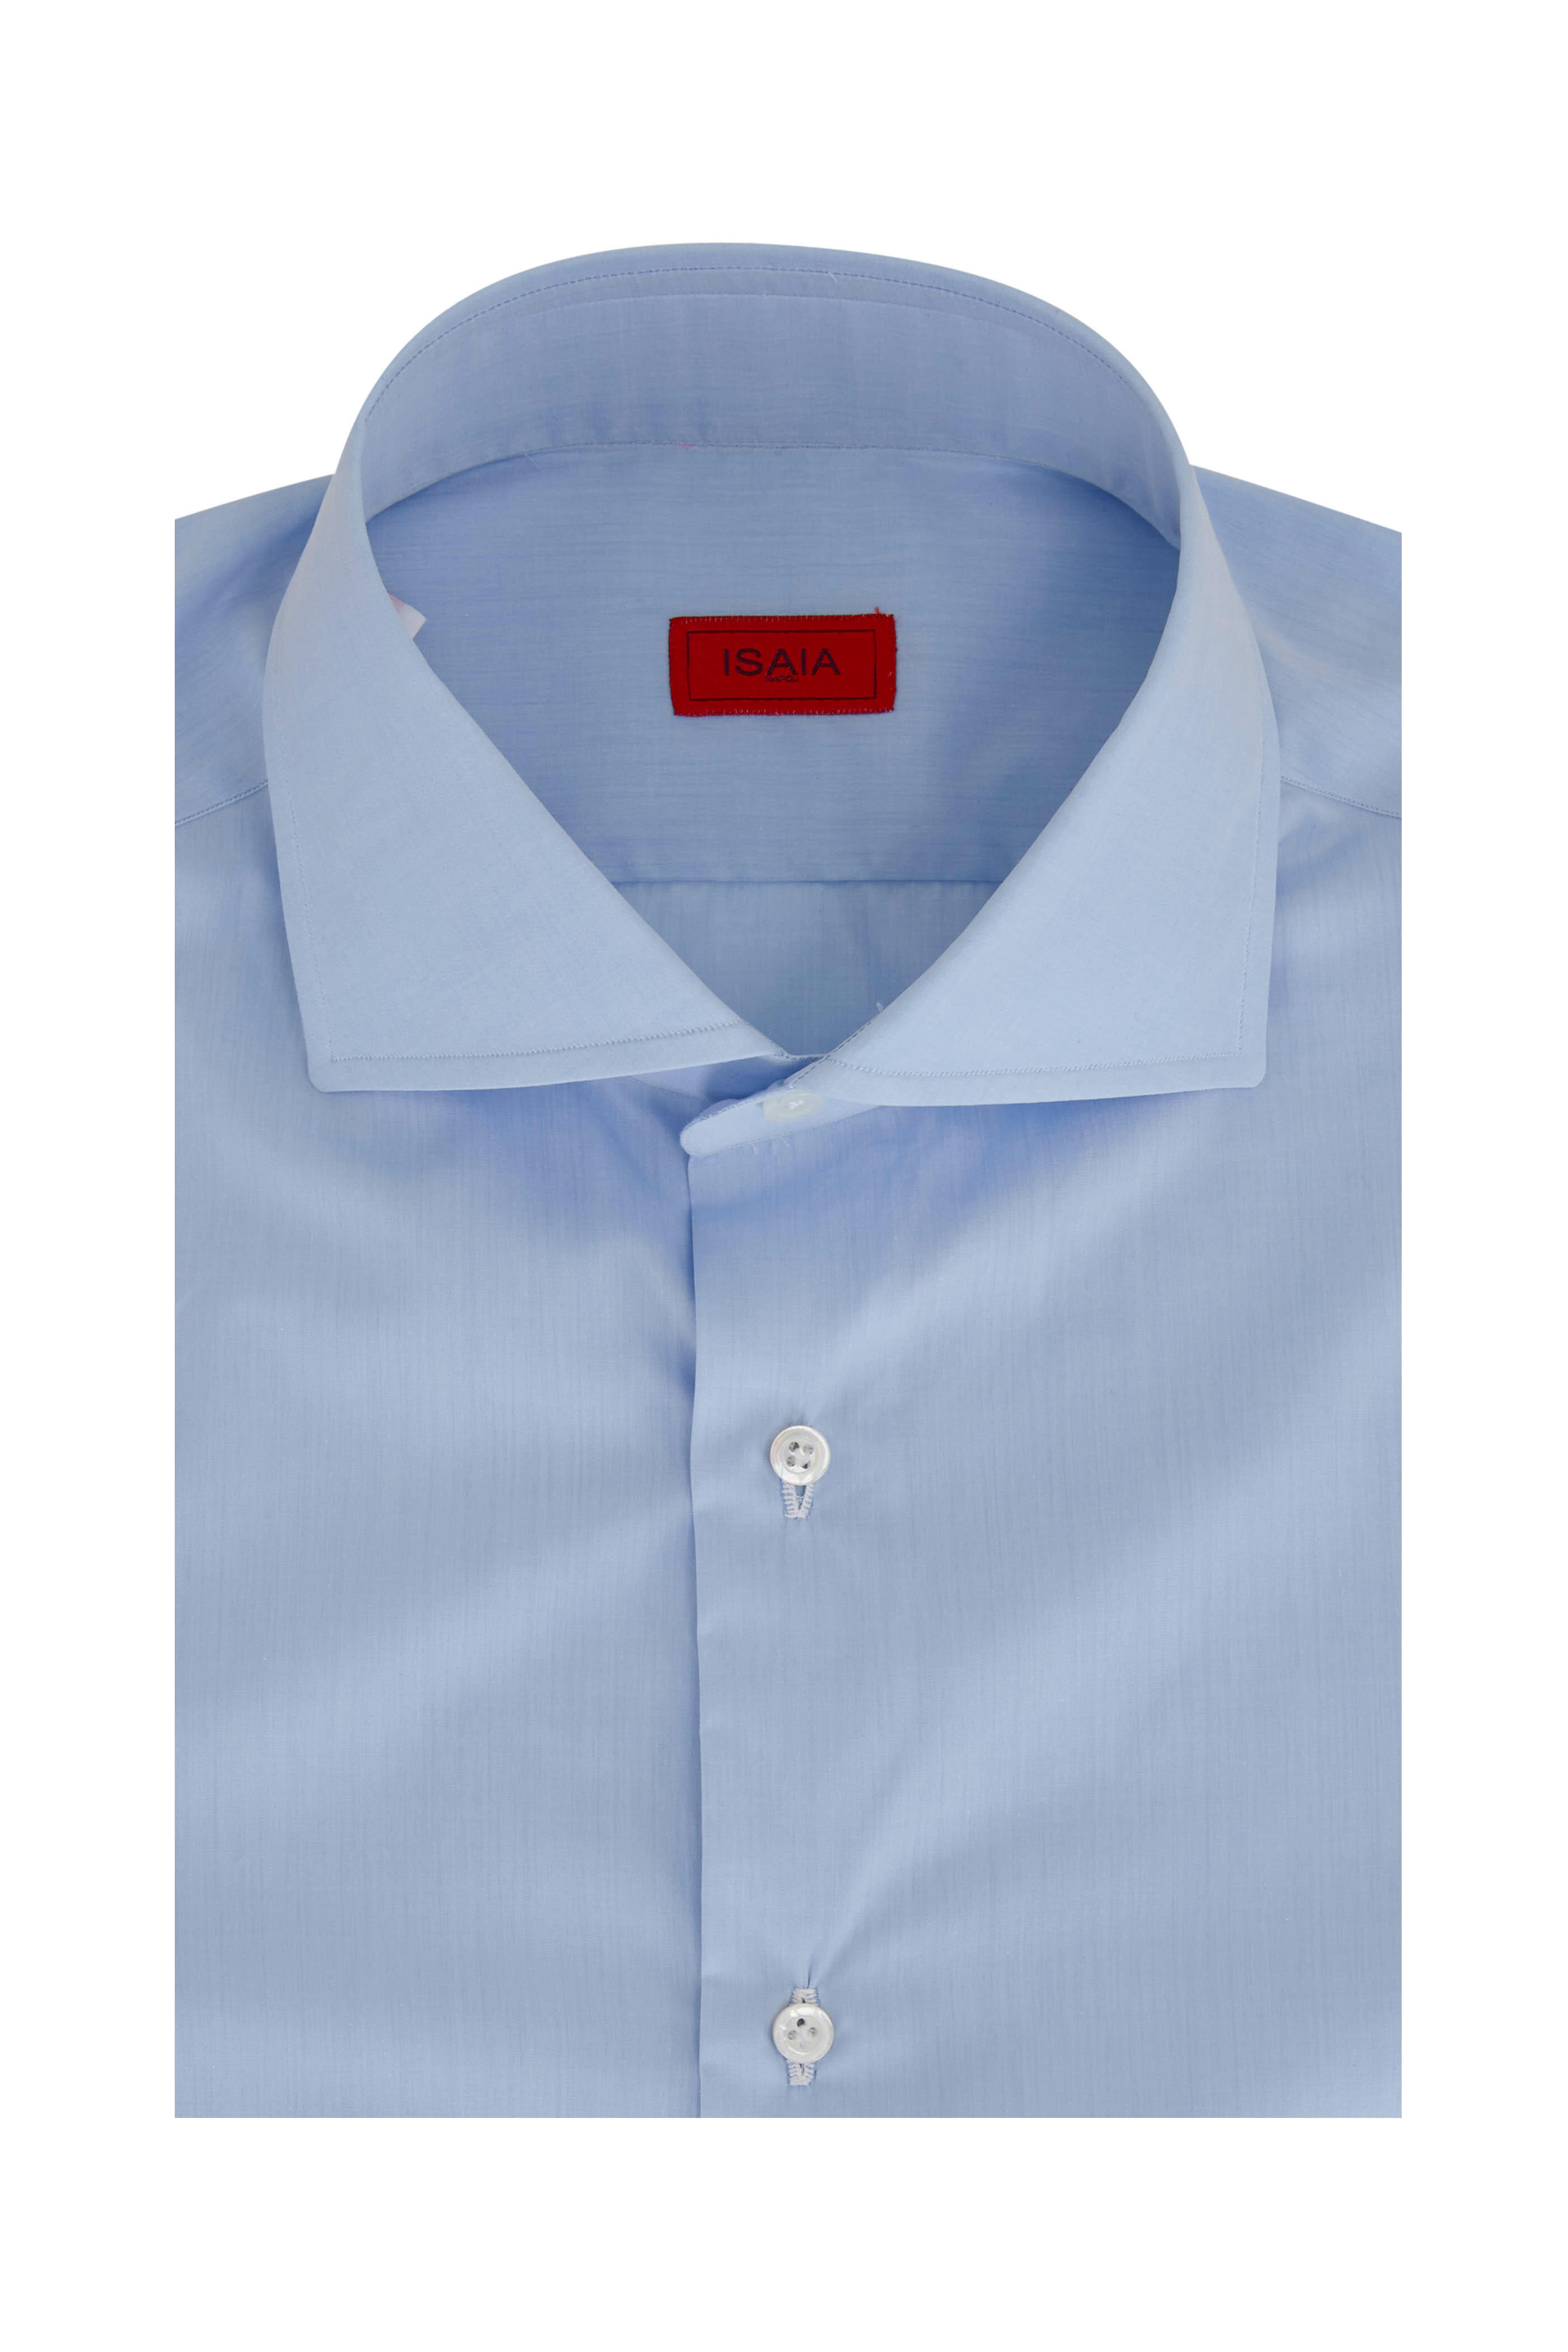 Isaia - Light Blue Cotton Dress Shirt | Mitchell Stores